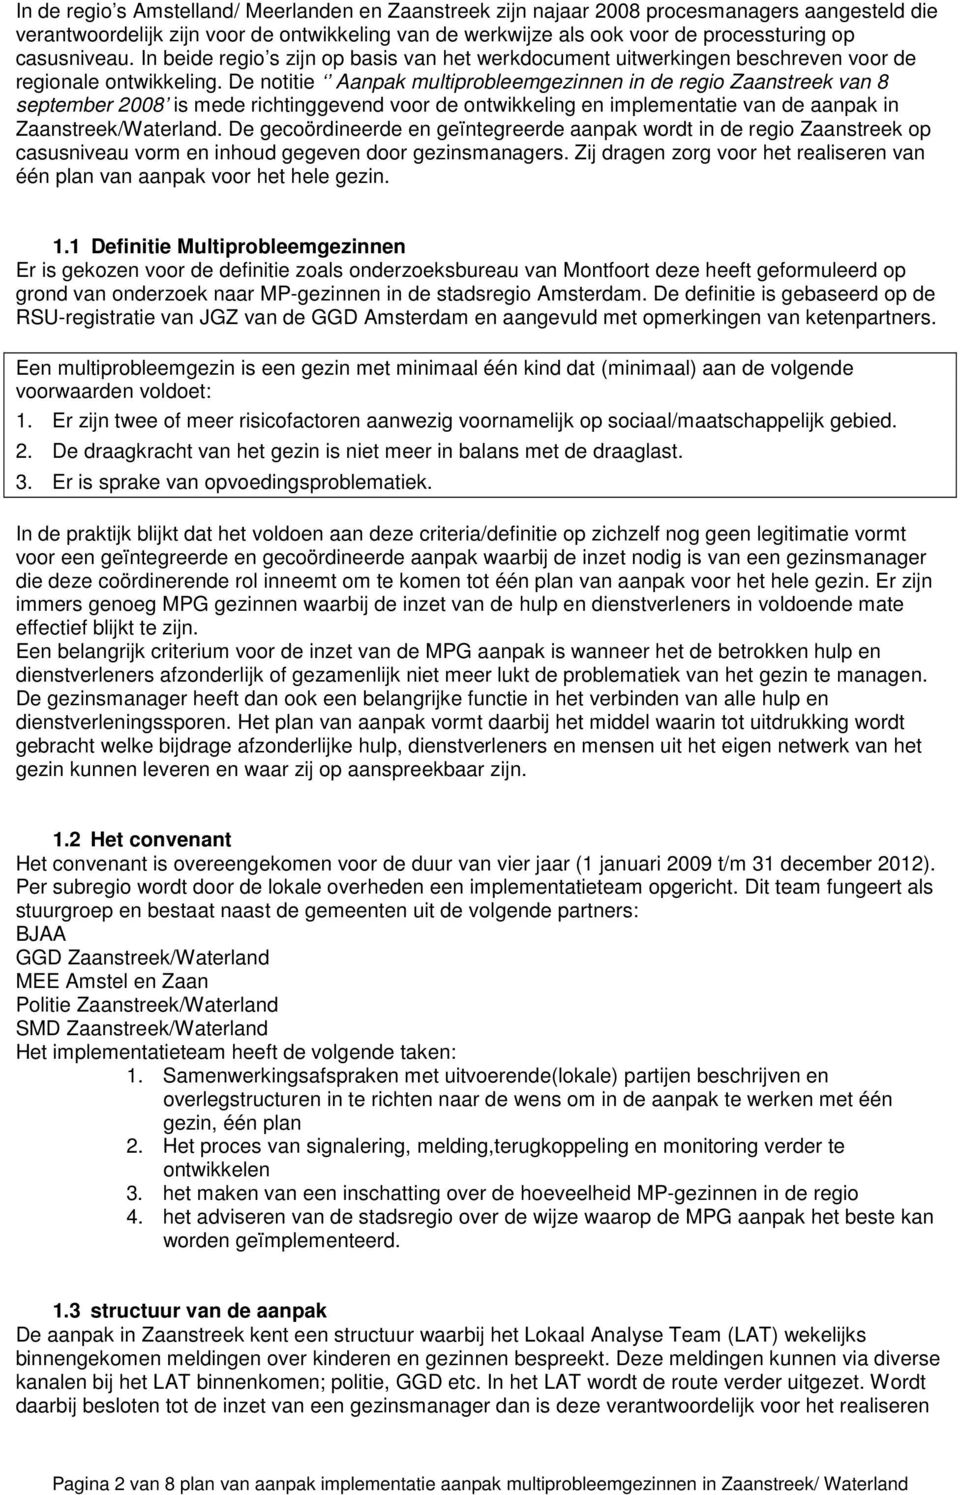 De notitie Aanpak multiprobleemgezinnen in de regio Zaanstreek van 8 september 2008 is mede richtinggevend voor de ontwikkeling en implementatie van de aanpak in Zaanstreek/Waterland.